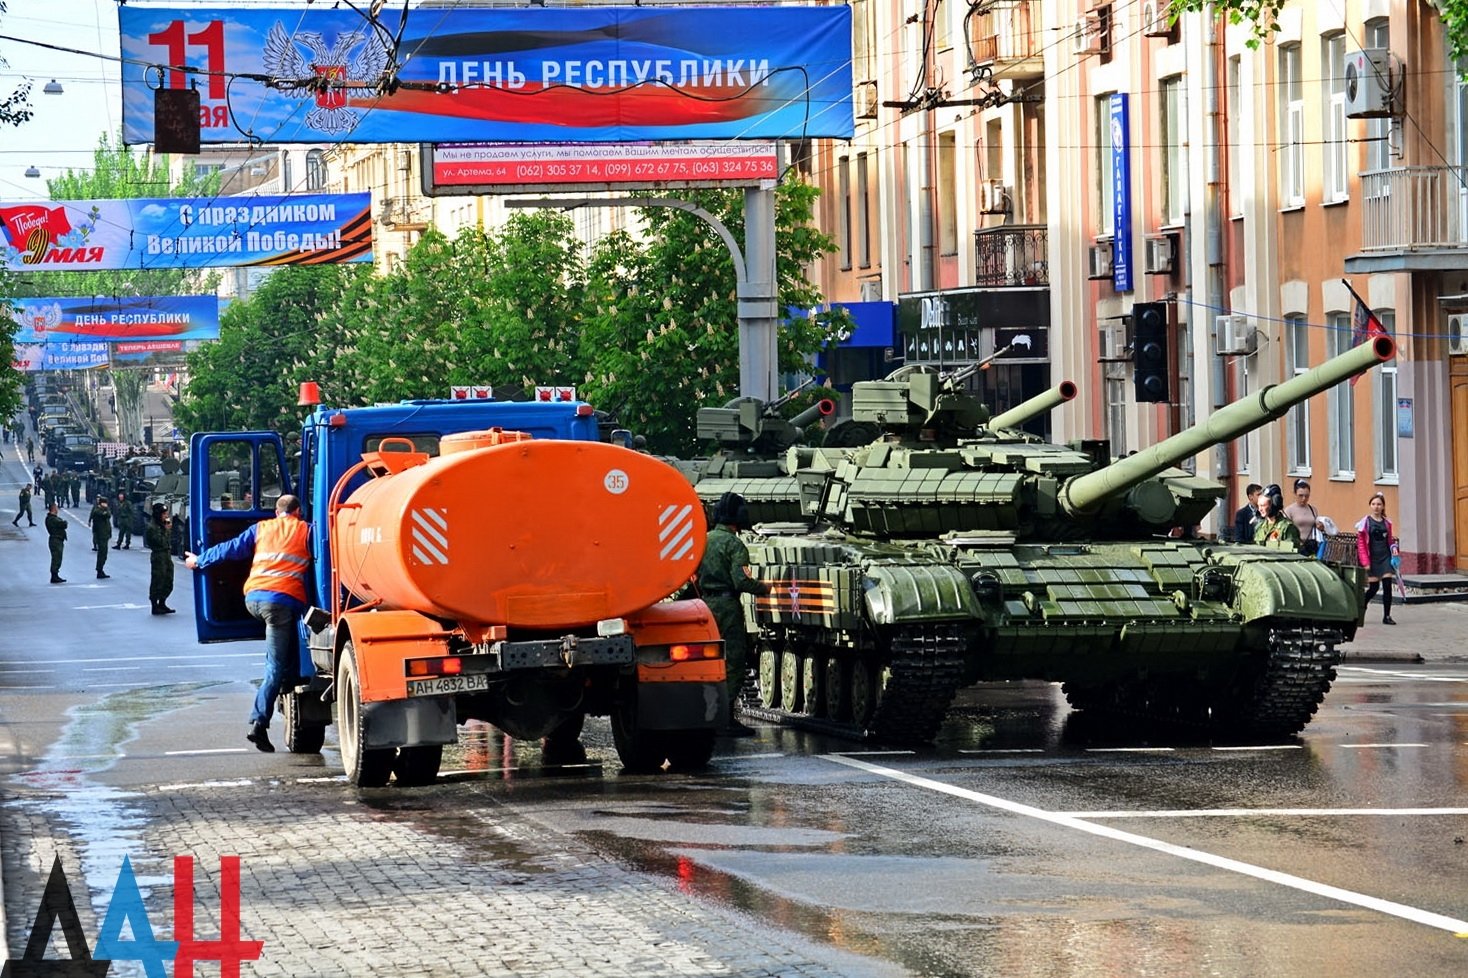 Натовп, танки і "Гради", Моторола в орденах: Окупований Донецьк відзначає 9 травня (ФОТО) - фото 1